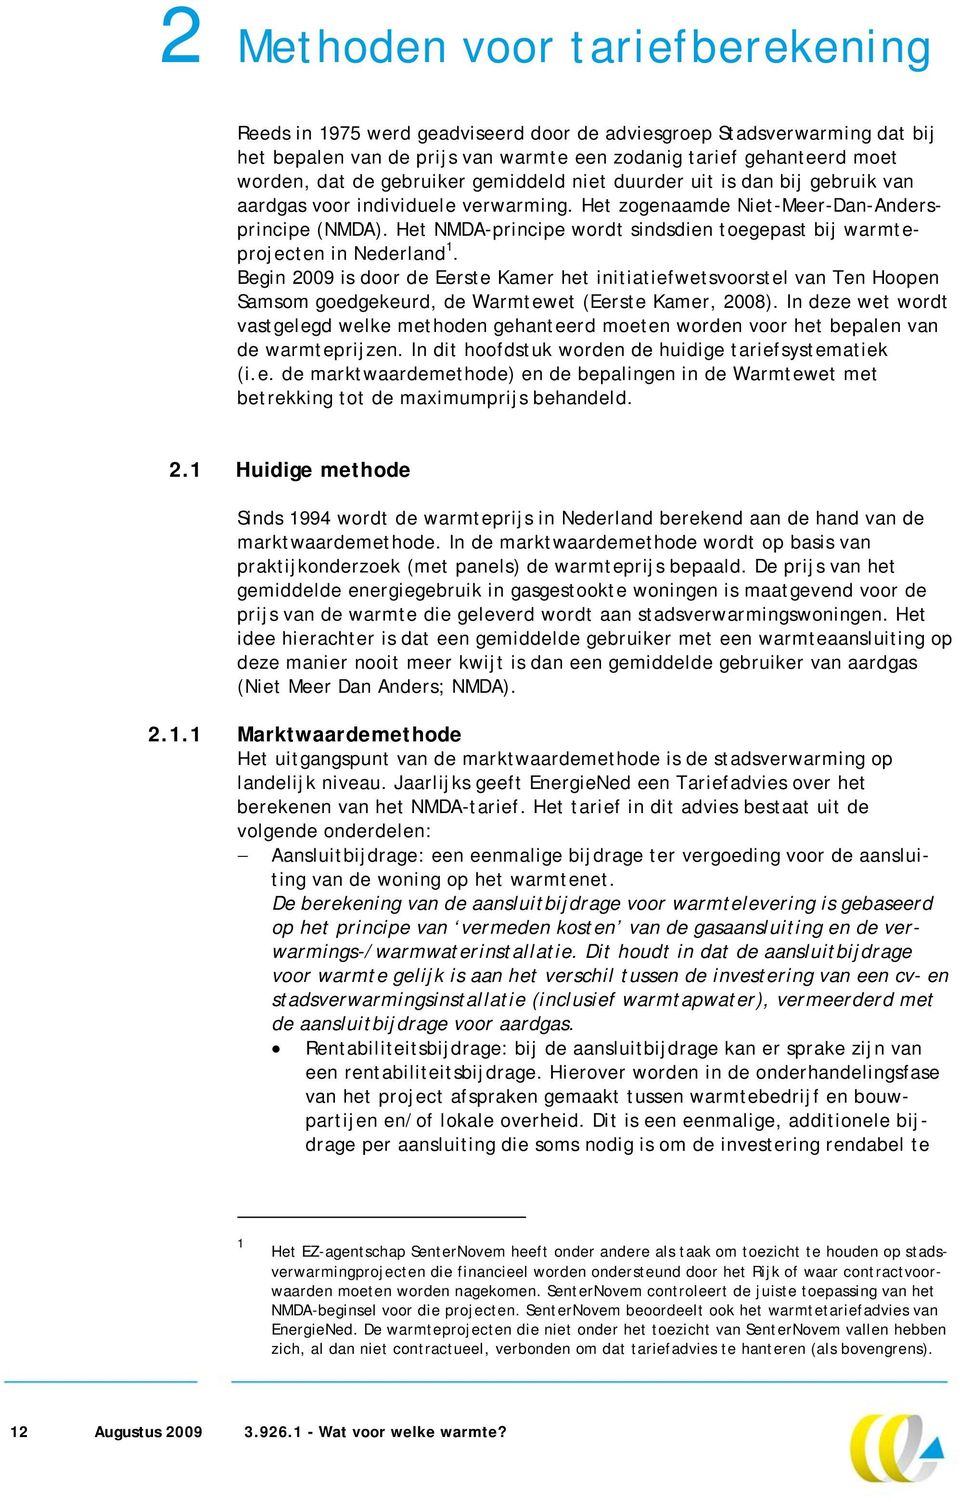 Het NMDA-principe wordt sindsdien toegepast bij warmteprojecten in Nederland 1.